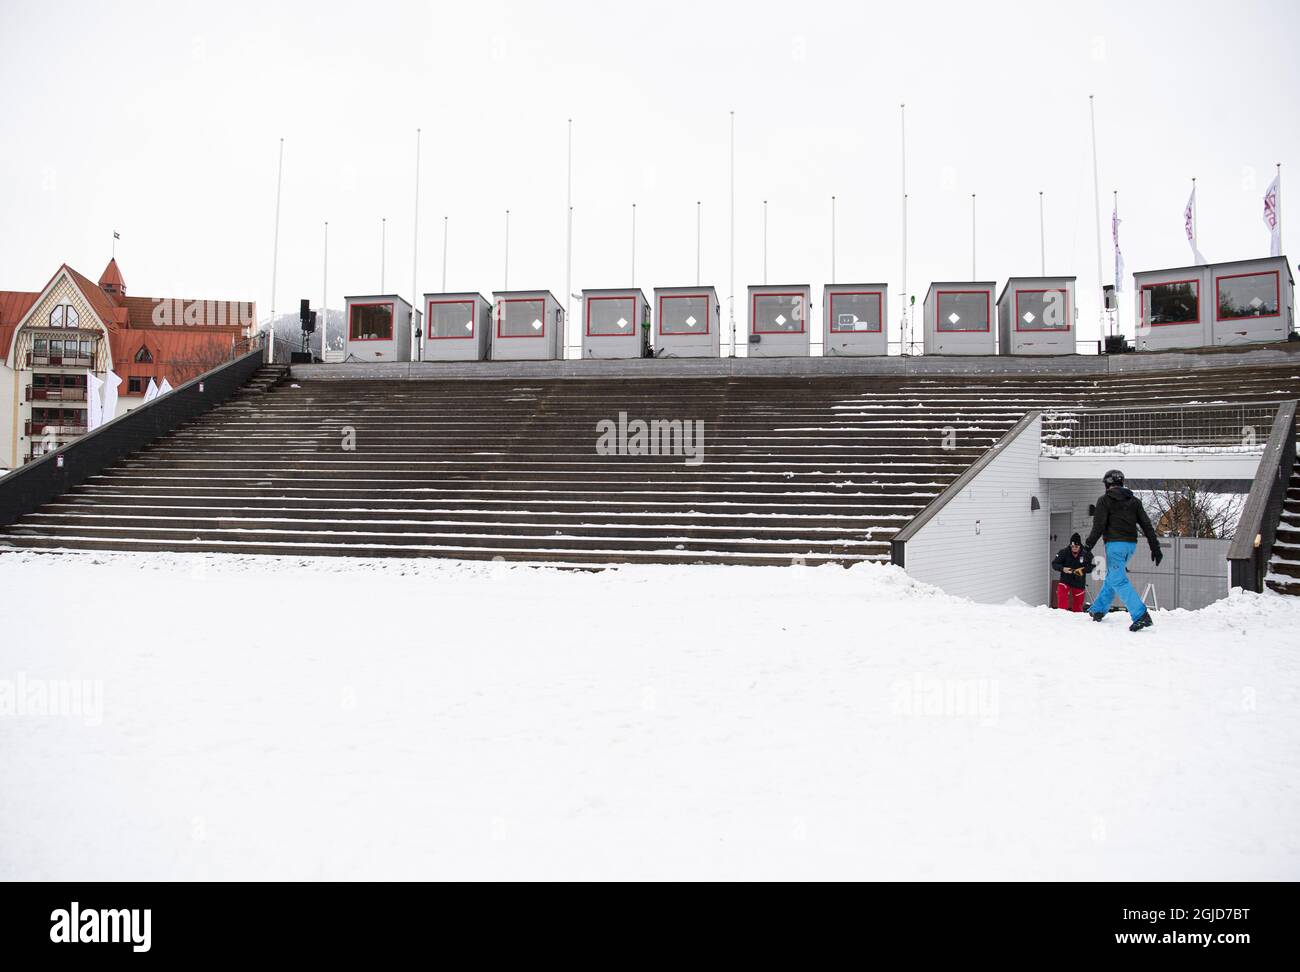 Vue sur les stands de la station de ski de are, dans le nord de la Suède, le 11 mars 2020. Selon les organisateurs, la finale de la coupe du monde de ski alpin en fin de semaine a été annulée en raison de la préoccupation du coronavirus. L'Agence suédoise de la santé publique a demandé mercredi au gouvernement d'interdire temporairement les événements de plus de 500 personnes. Photo: Pontus Lundahl / TT / code 10050 Banque D'Images